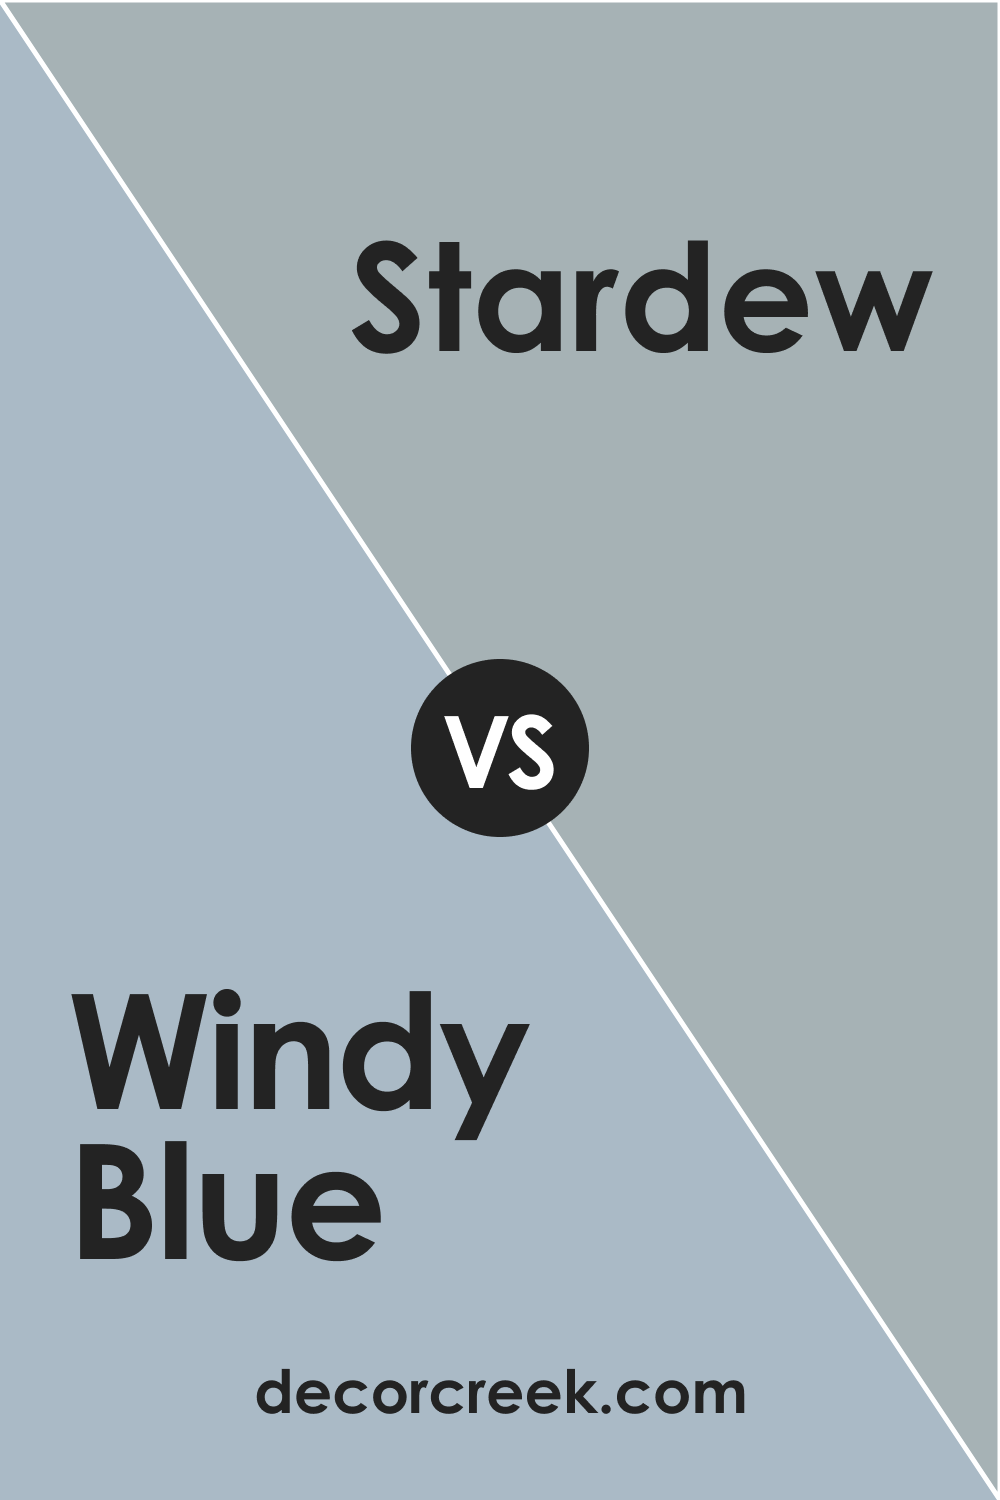 Stardew vs SW Windy Blue